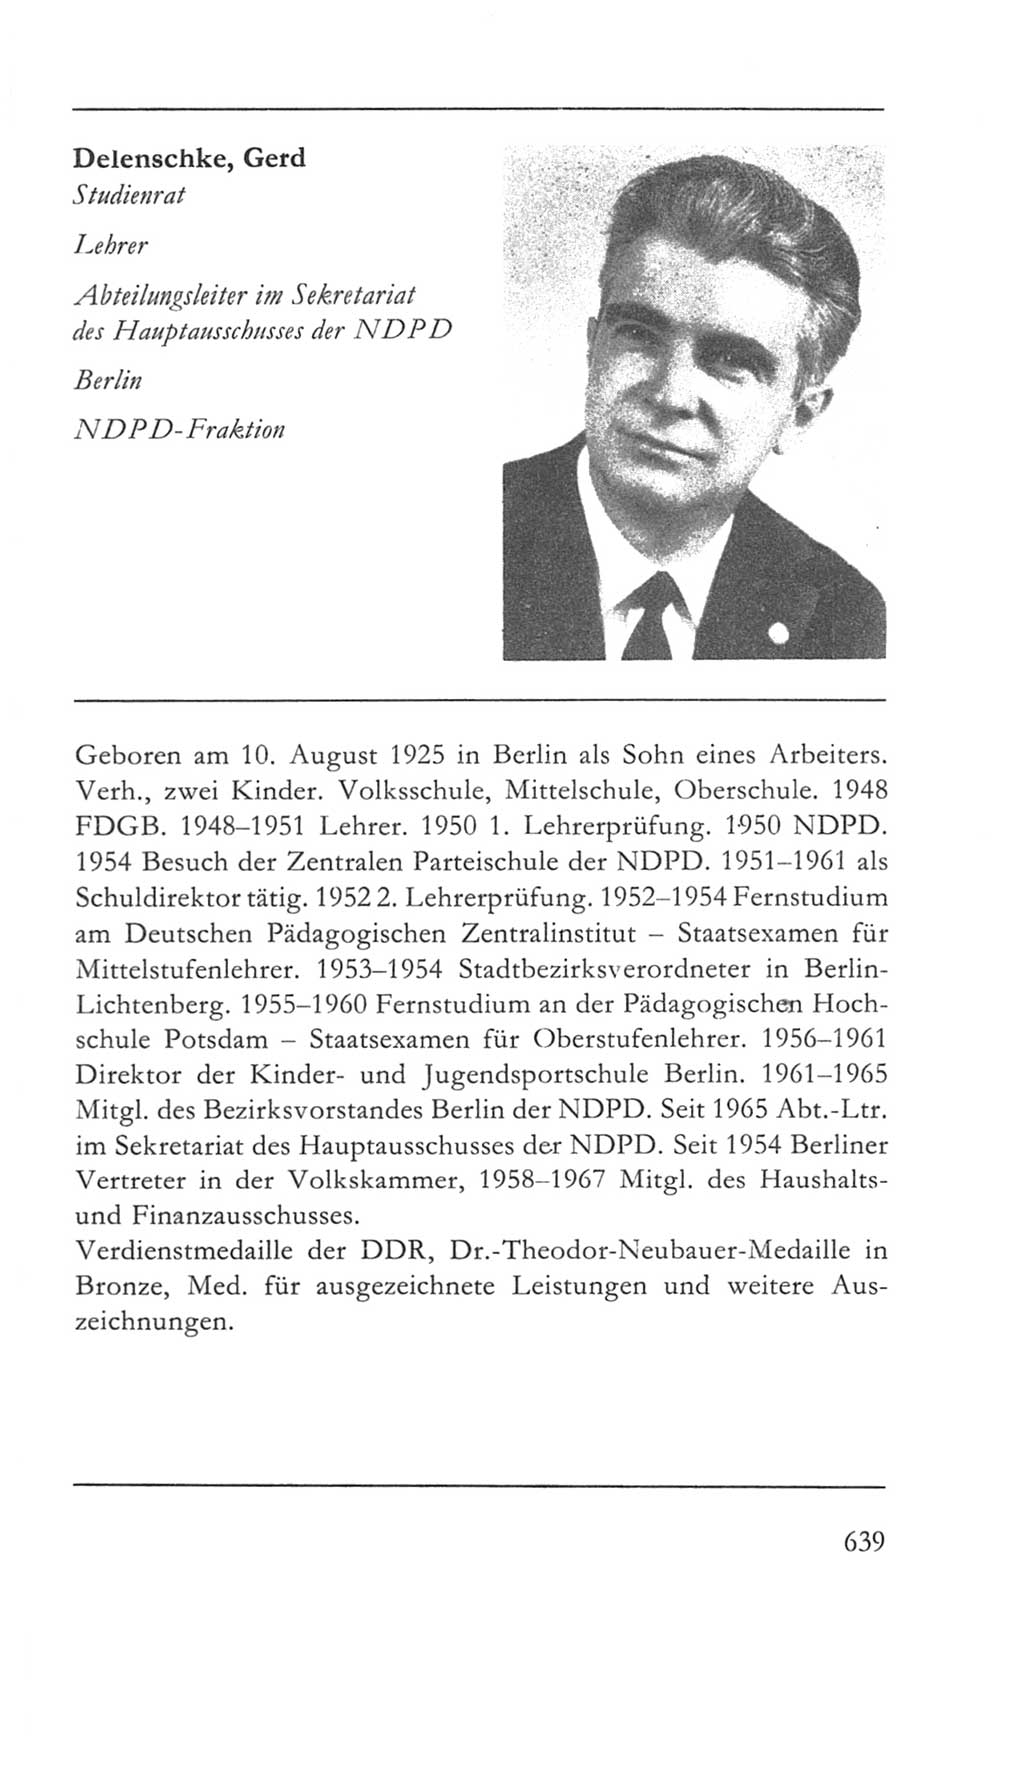 Volkskammer (VK) der Deutschen Demokratischen Republik (DDR) 5. Wahlperiode 1967-1971, Seite 639 (VK. DDR 5. WP. 1967-1971, S. 639)